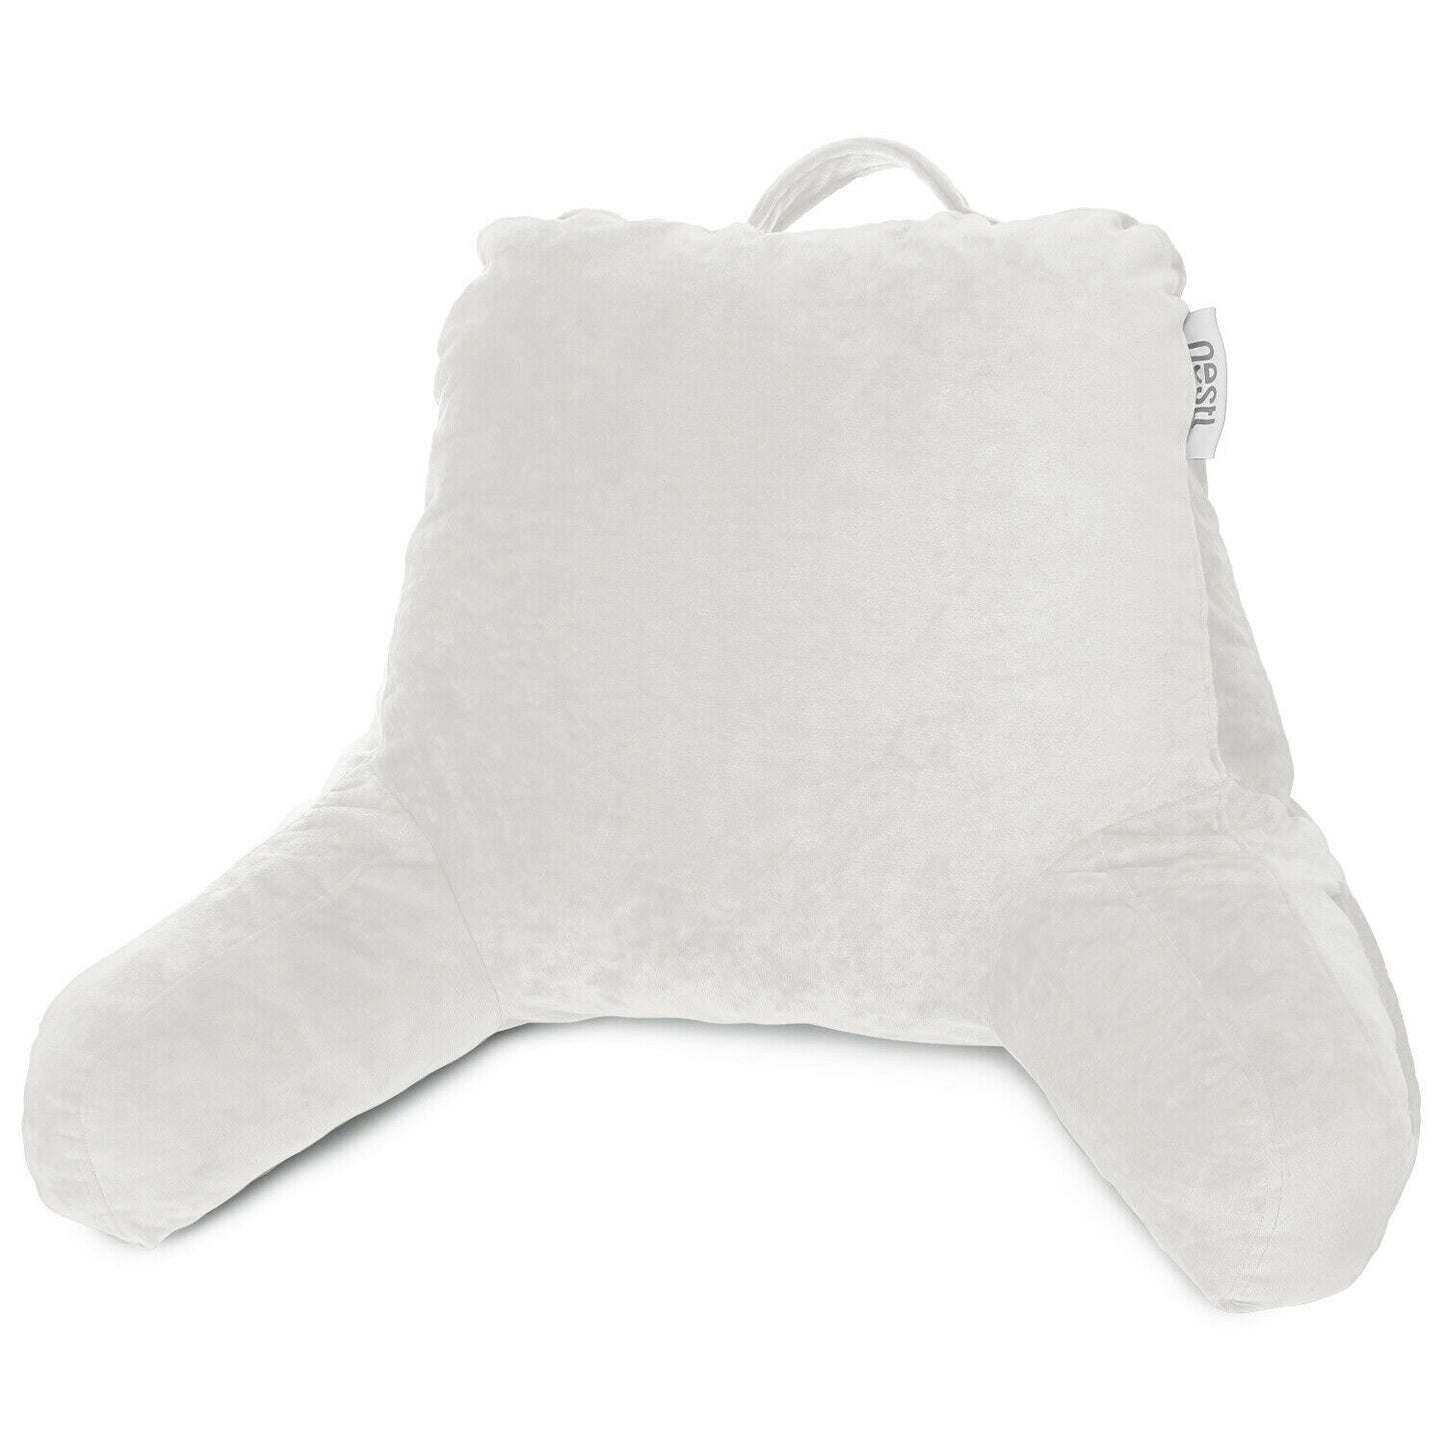 Pillows - TV & Reading Pillow - Kid's Memory Foam Bedrest Back Pillow 12 Colors! - White